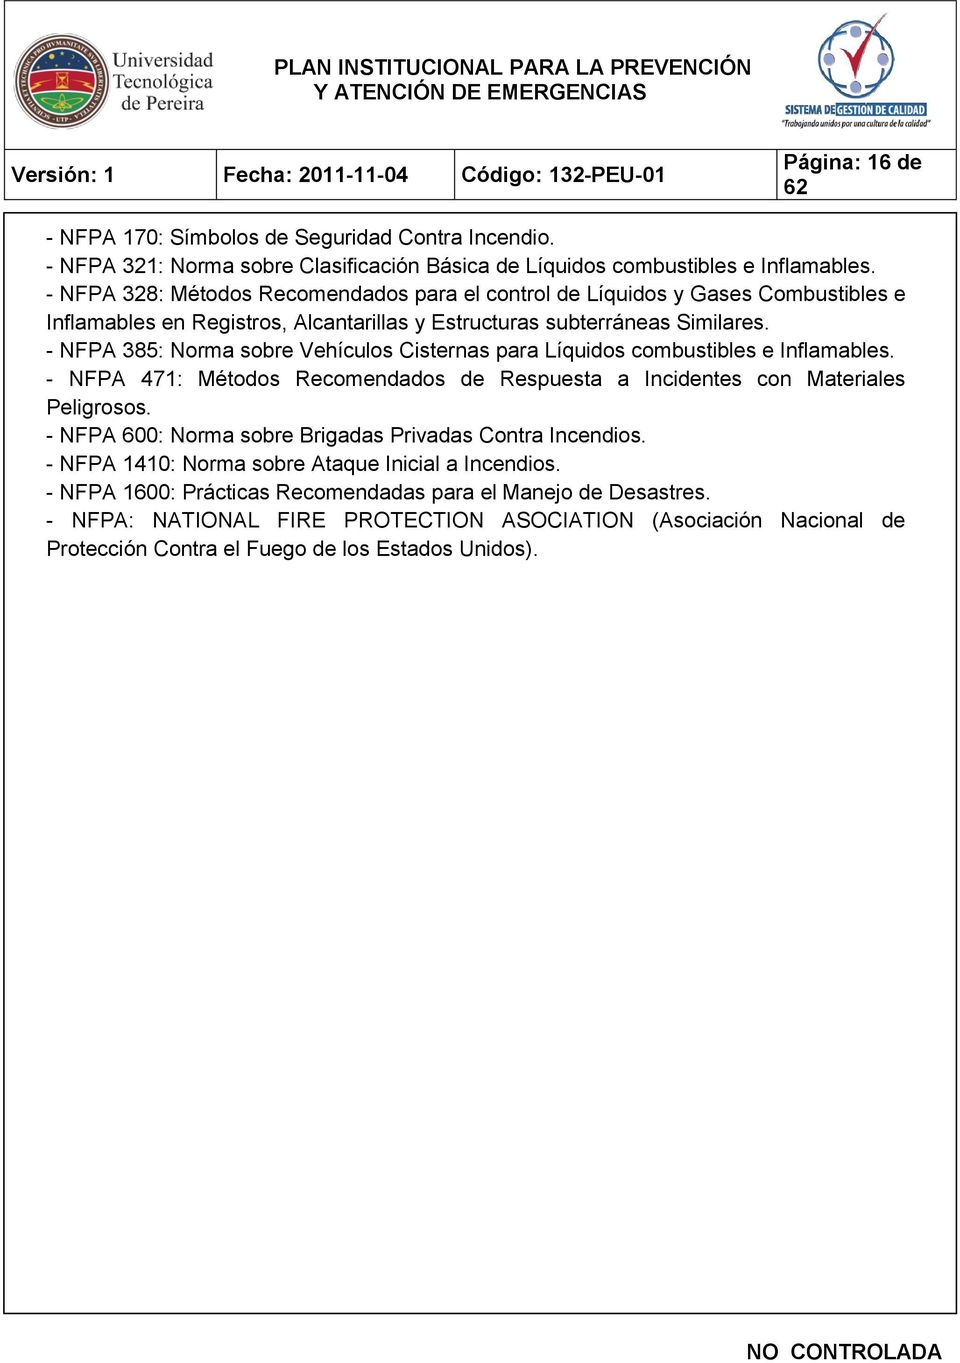 - NFPA 385: Norma sobre Vehículos Cisternas para Líquidos combustibles e Inflamables. - NFPA 471: Métodos Recomendados de Respuesta a Incidentes con Materiales Peligrosos.